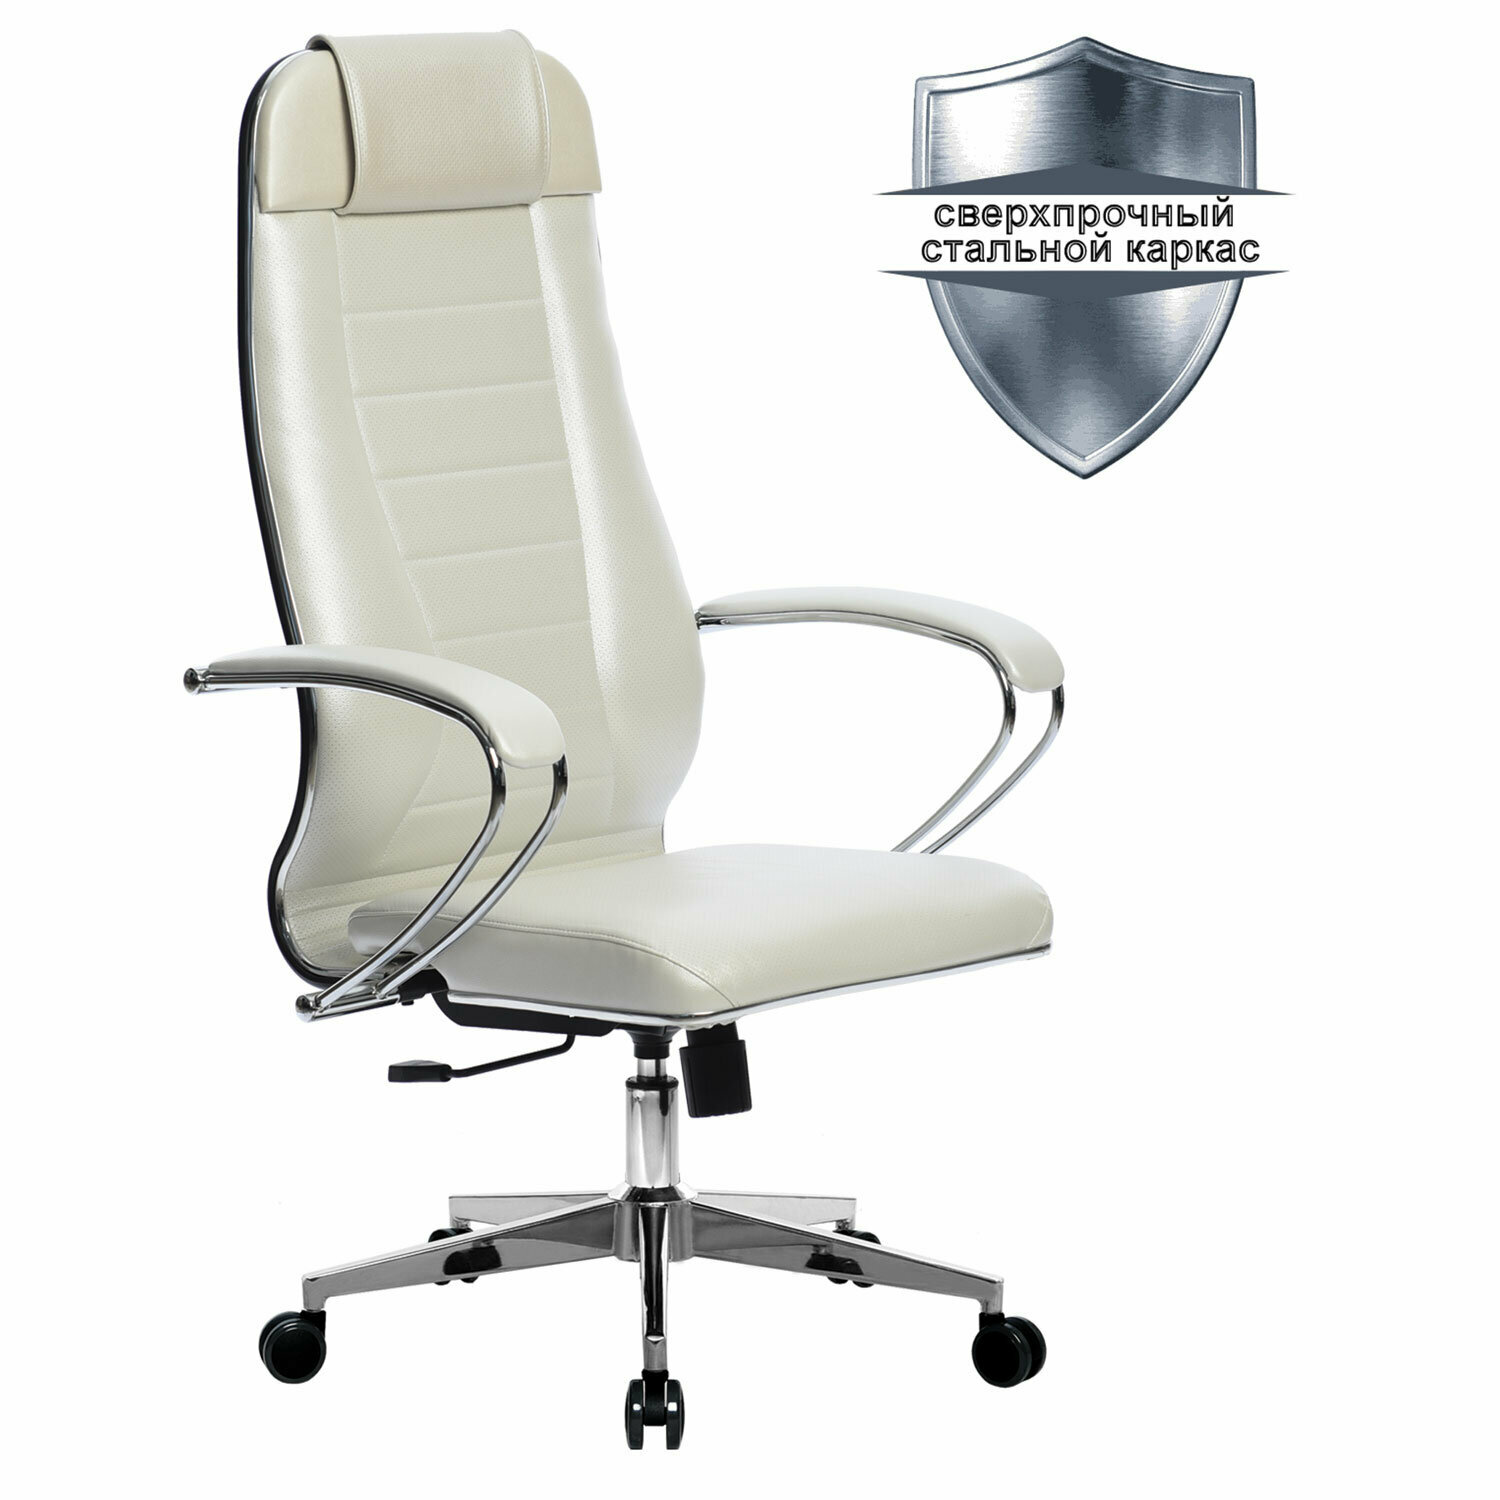 Кресло офисное МЕТТА К-31 хром, рецик. кожа, сиденье и спинка мягкие, белое